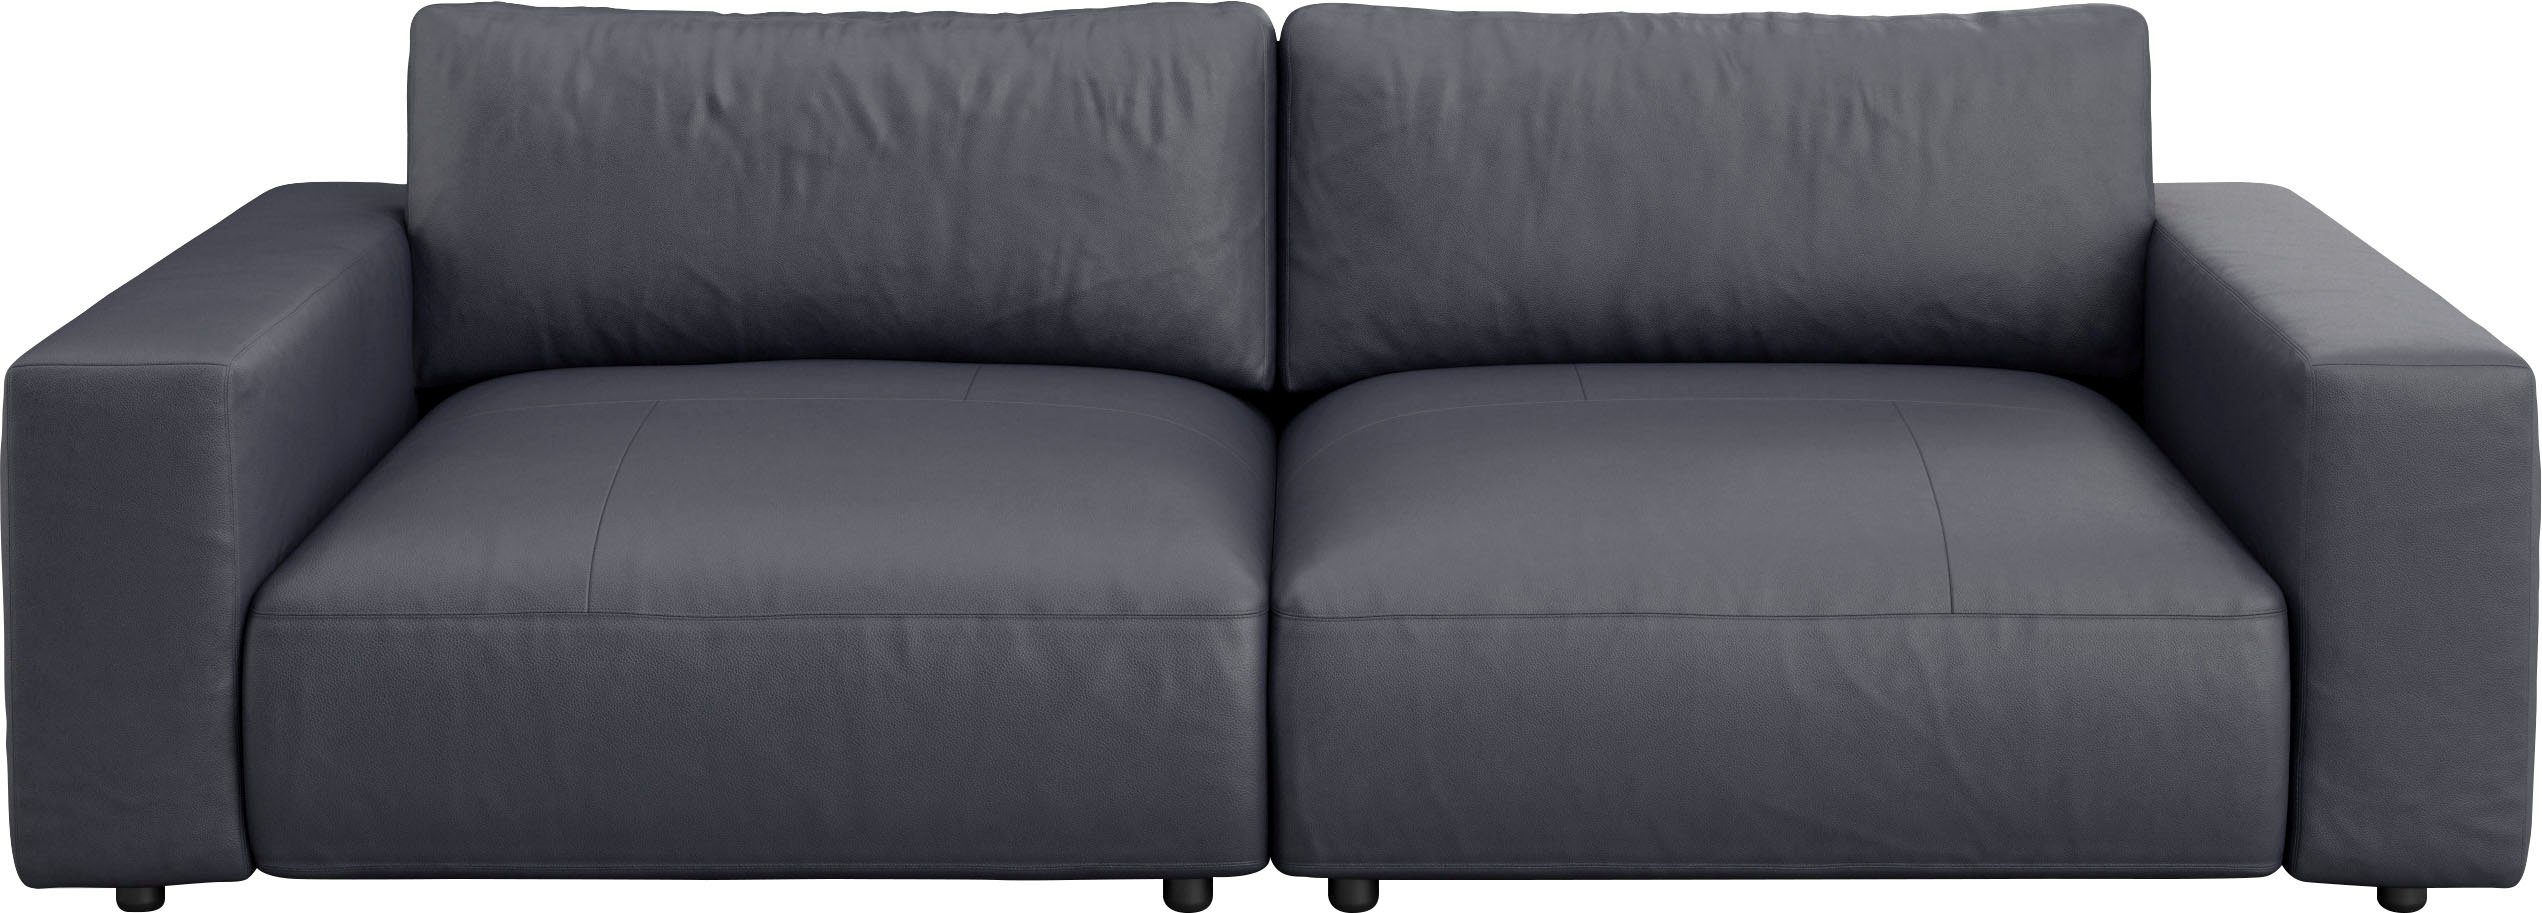 LUCIA, M Musterring Big-Sofa in by GALLERY Qualitäten und vielen unterschiedlichen 4 Nähten, branded 2,5-Sitzer